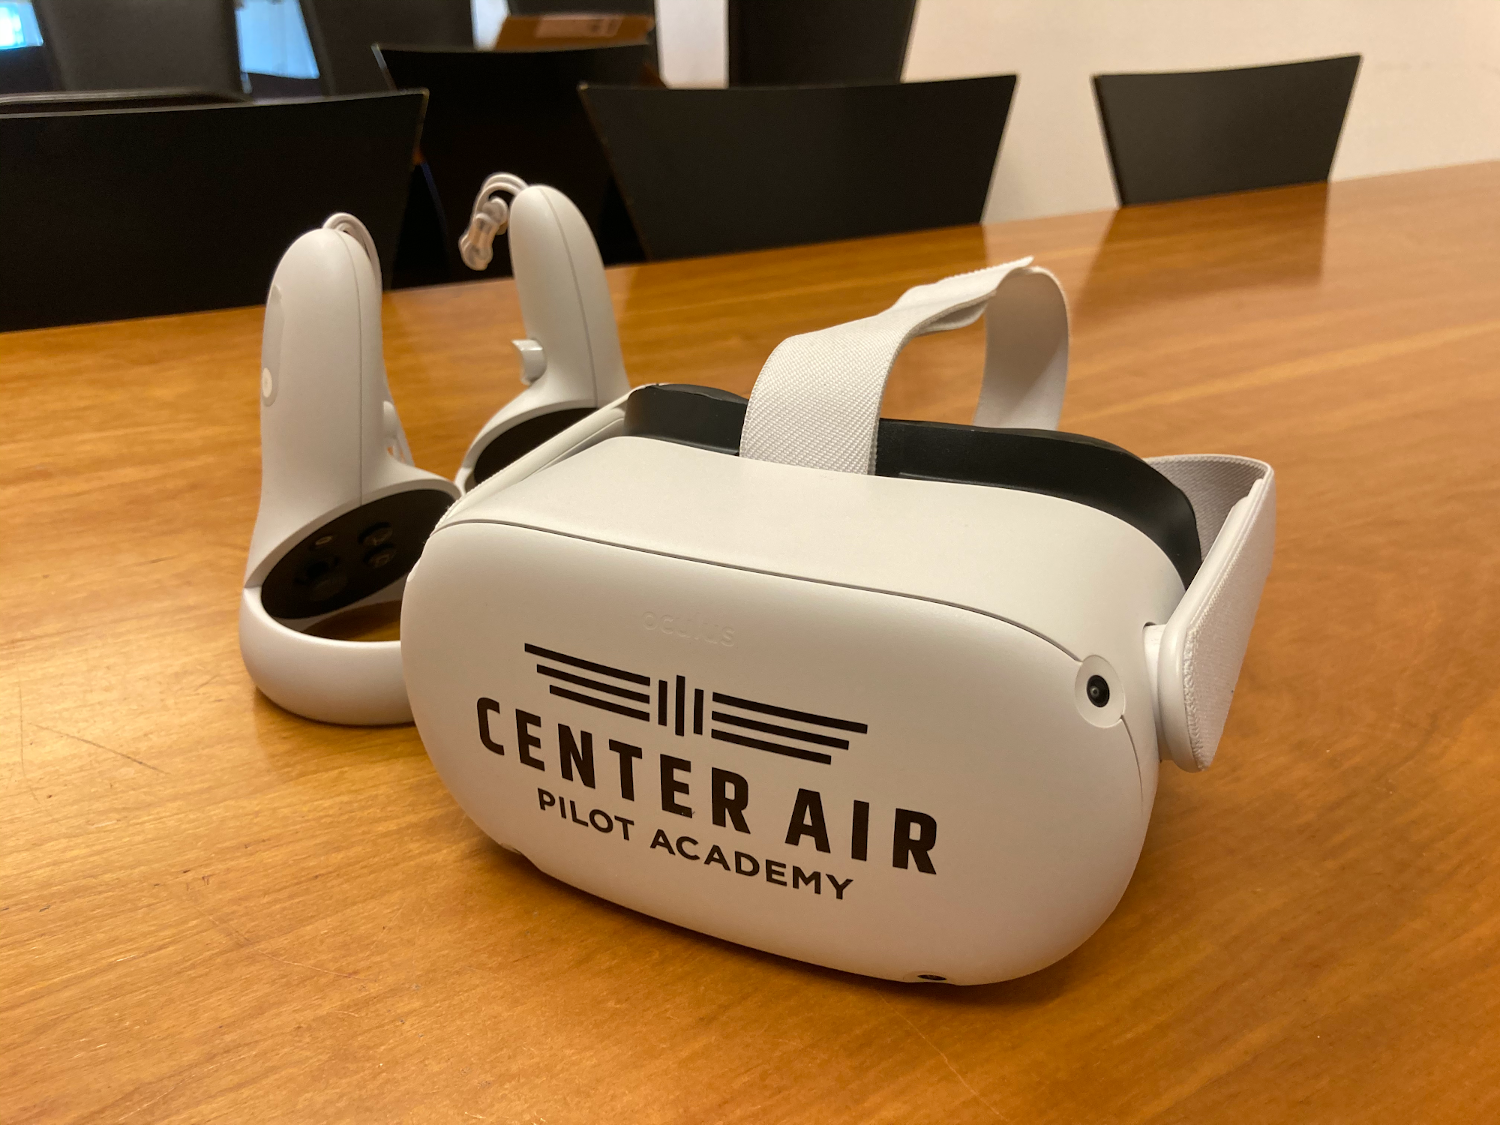 VRpilot VRguide Center Air Pilot Academy Oculus Quest 2